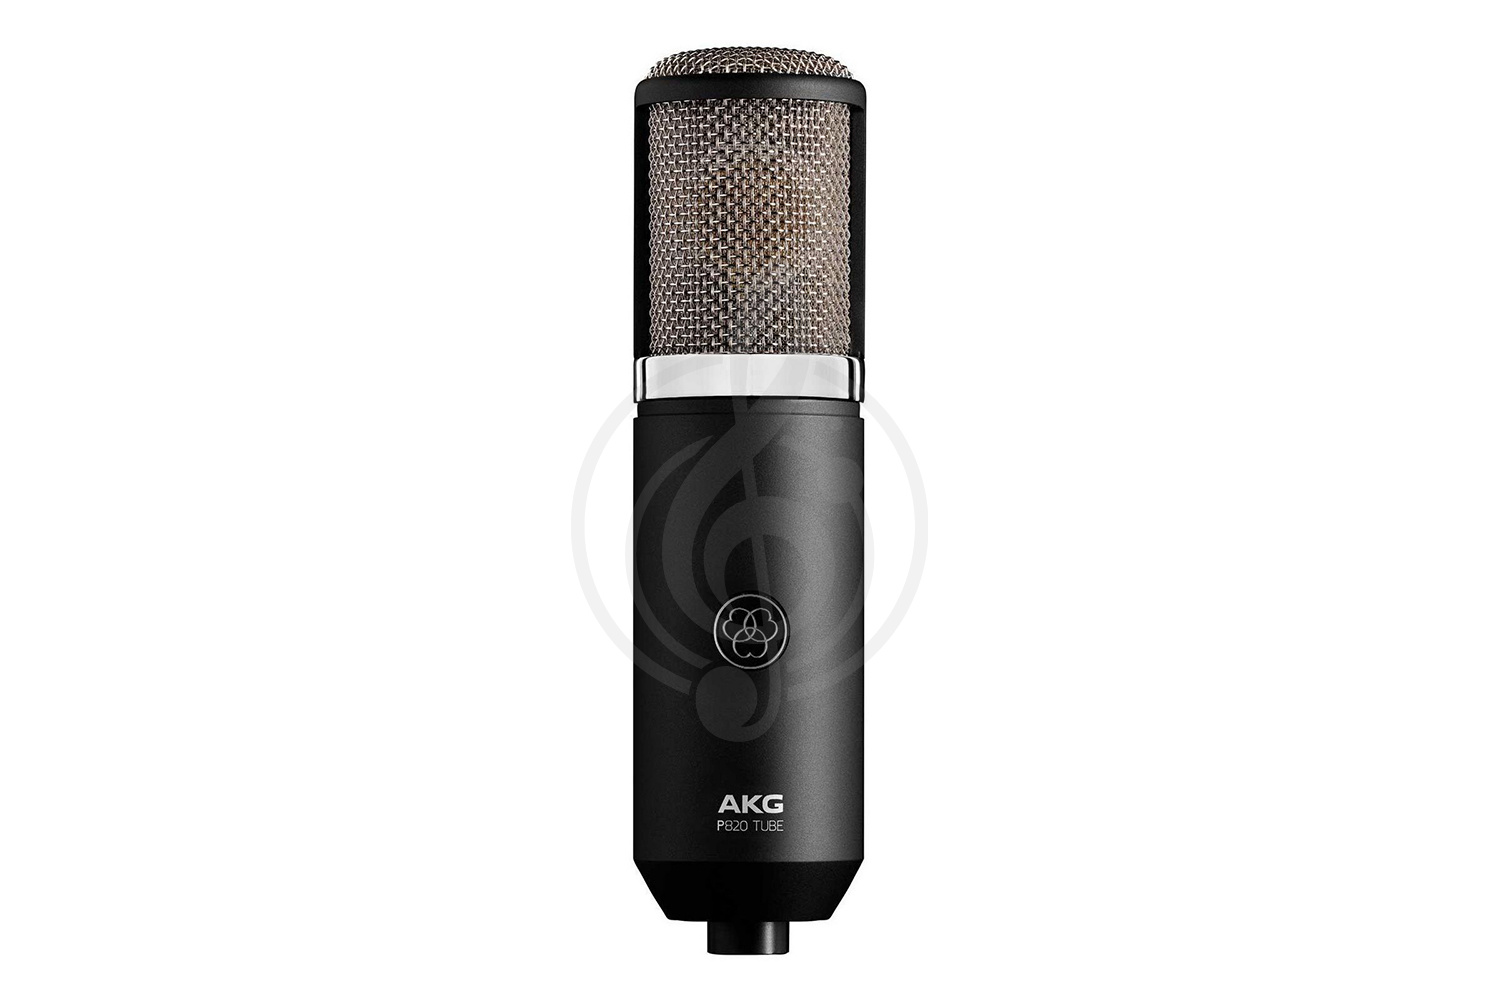 Ламповый студийный микрофон Ламповые студийные микрофоны AKG AKG P820 Tube - конденсаторный студийный микрофон P820 Tube - фото 1